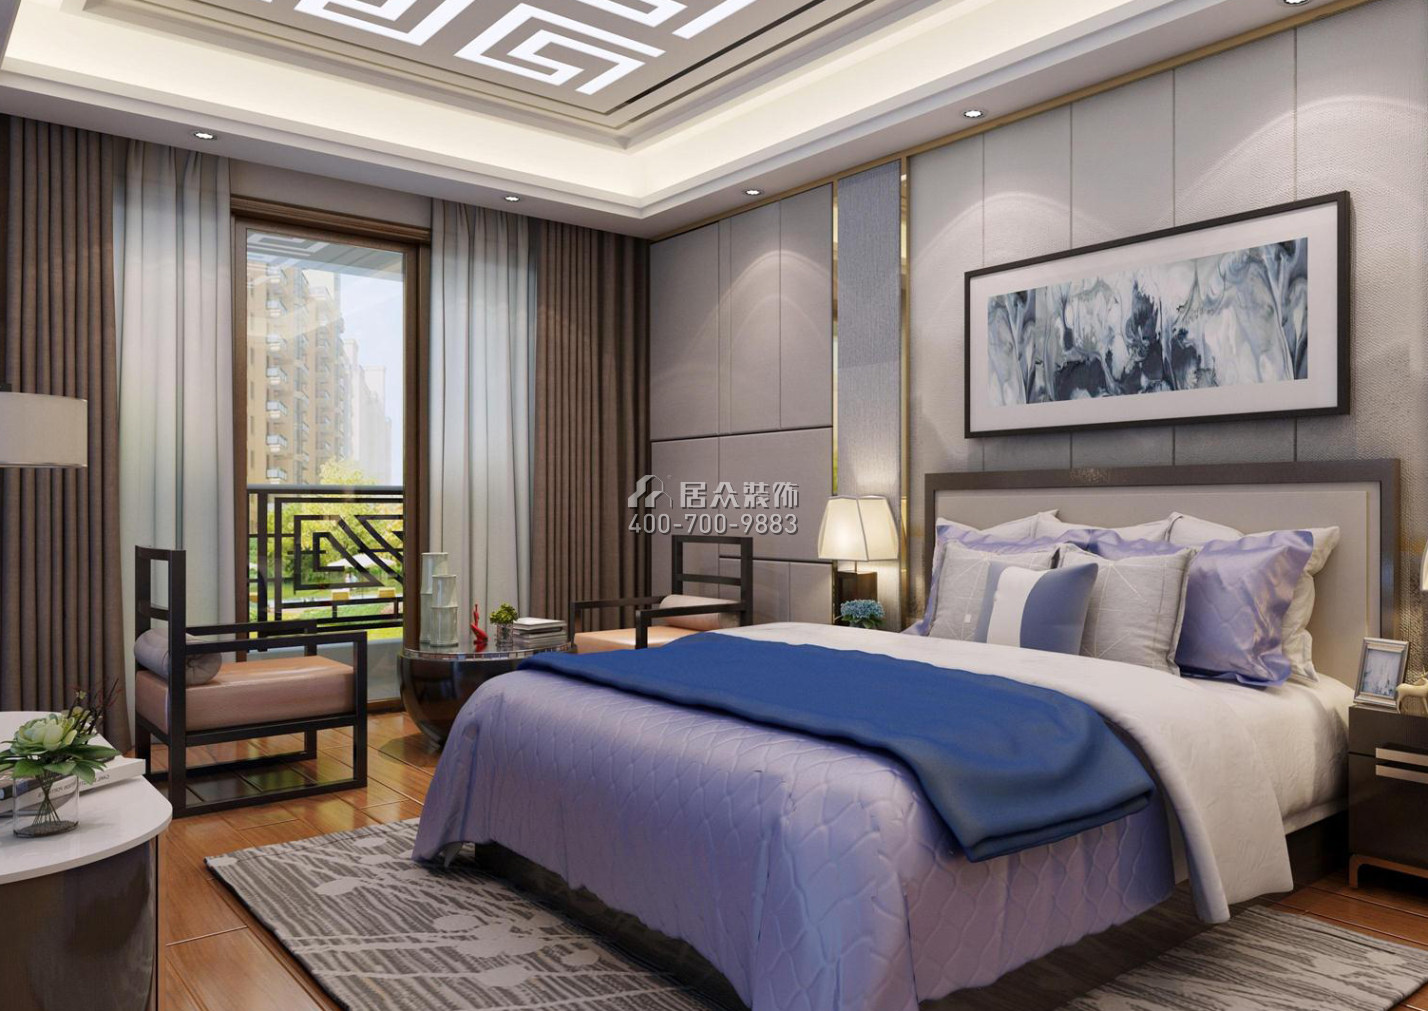 楓丹雅苑145平方米中式風格平層戶型臥室裝修效果圖